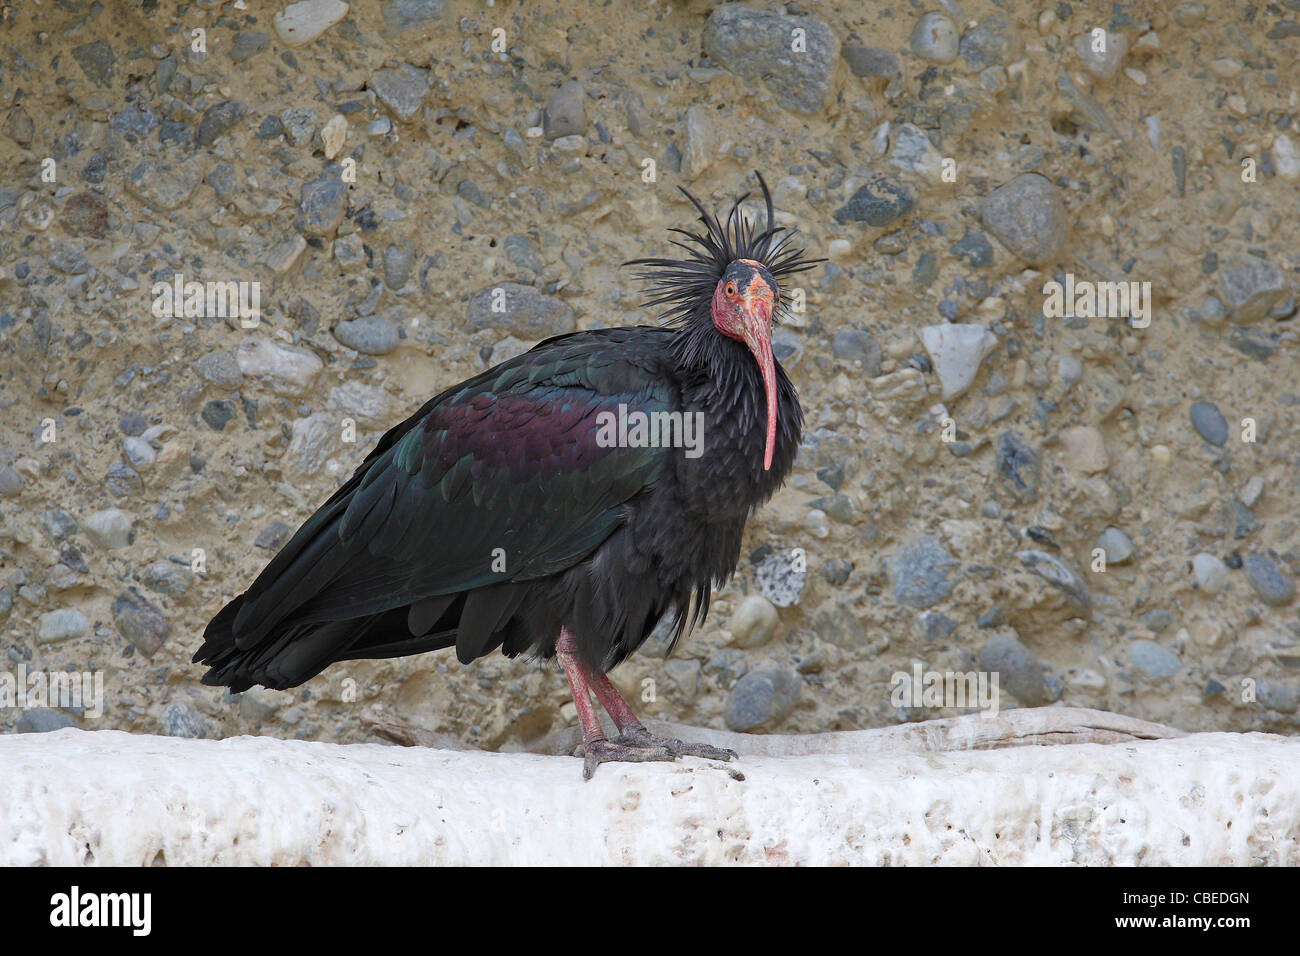 El ibis calvo (Geronticus eremita). Adulto de pie sobre una cornisa rocosa. Foto de stock